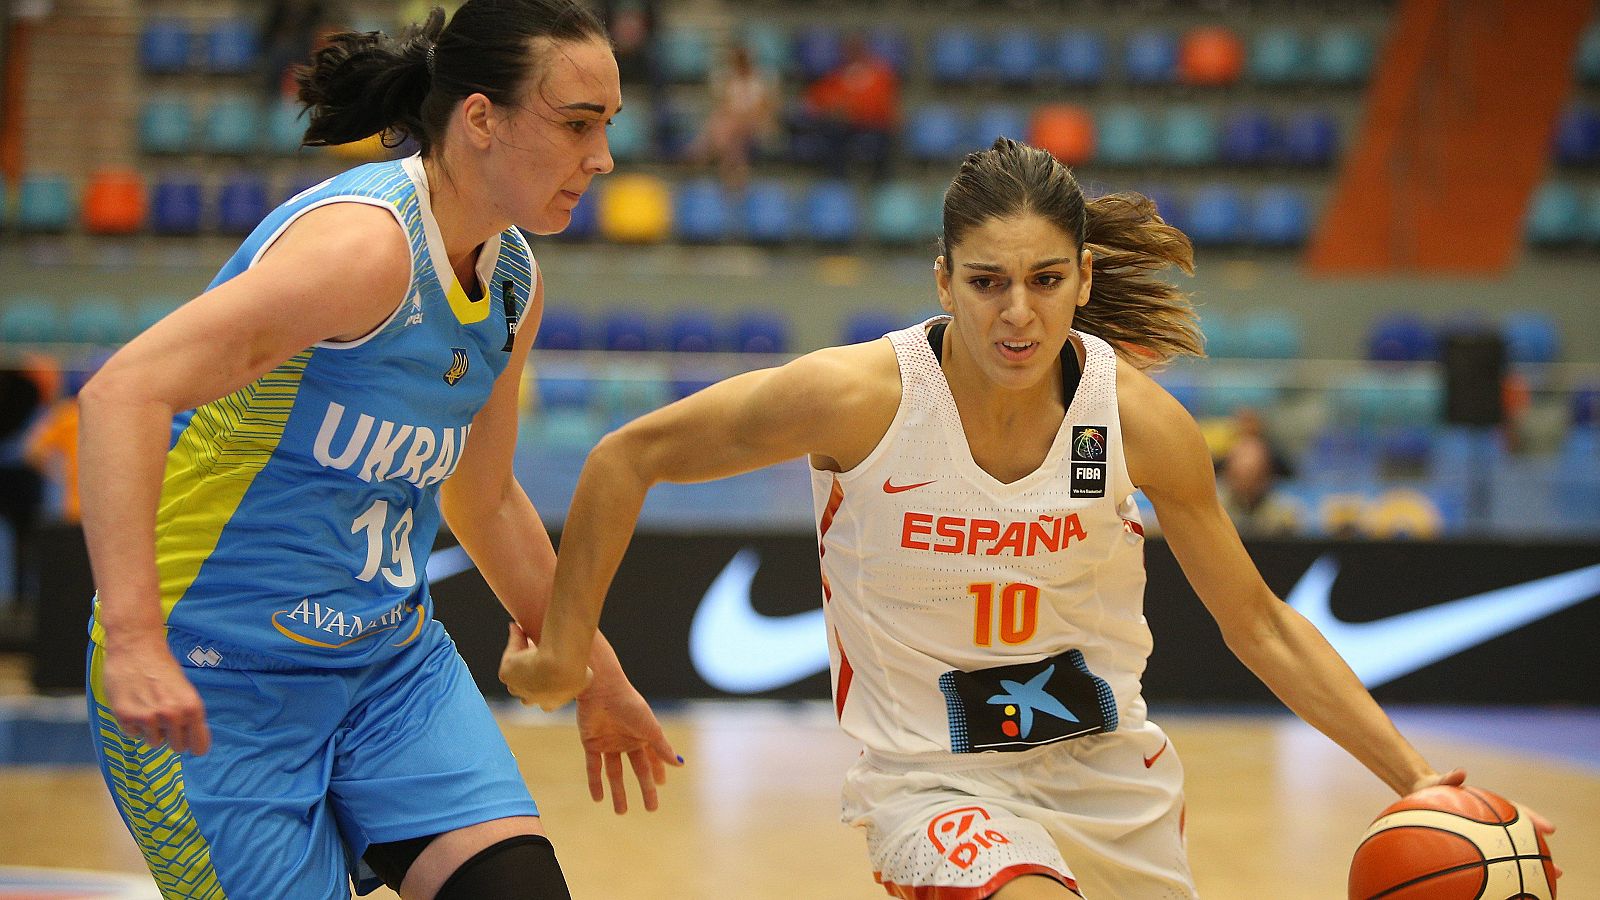 Marta Xaray conduce el juego de España ante Udonenko.